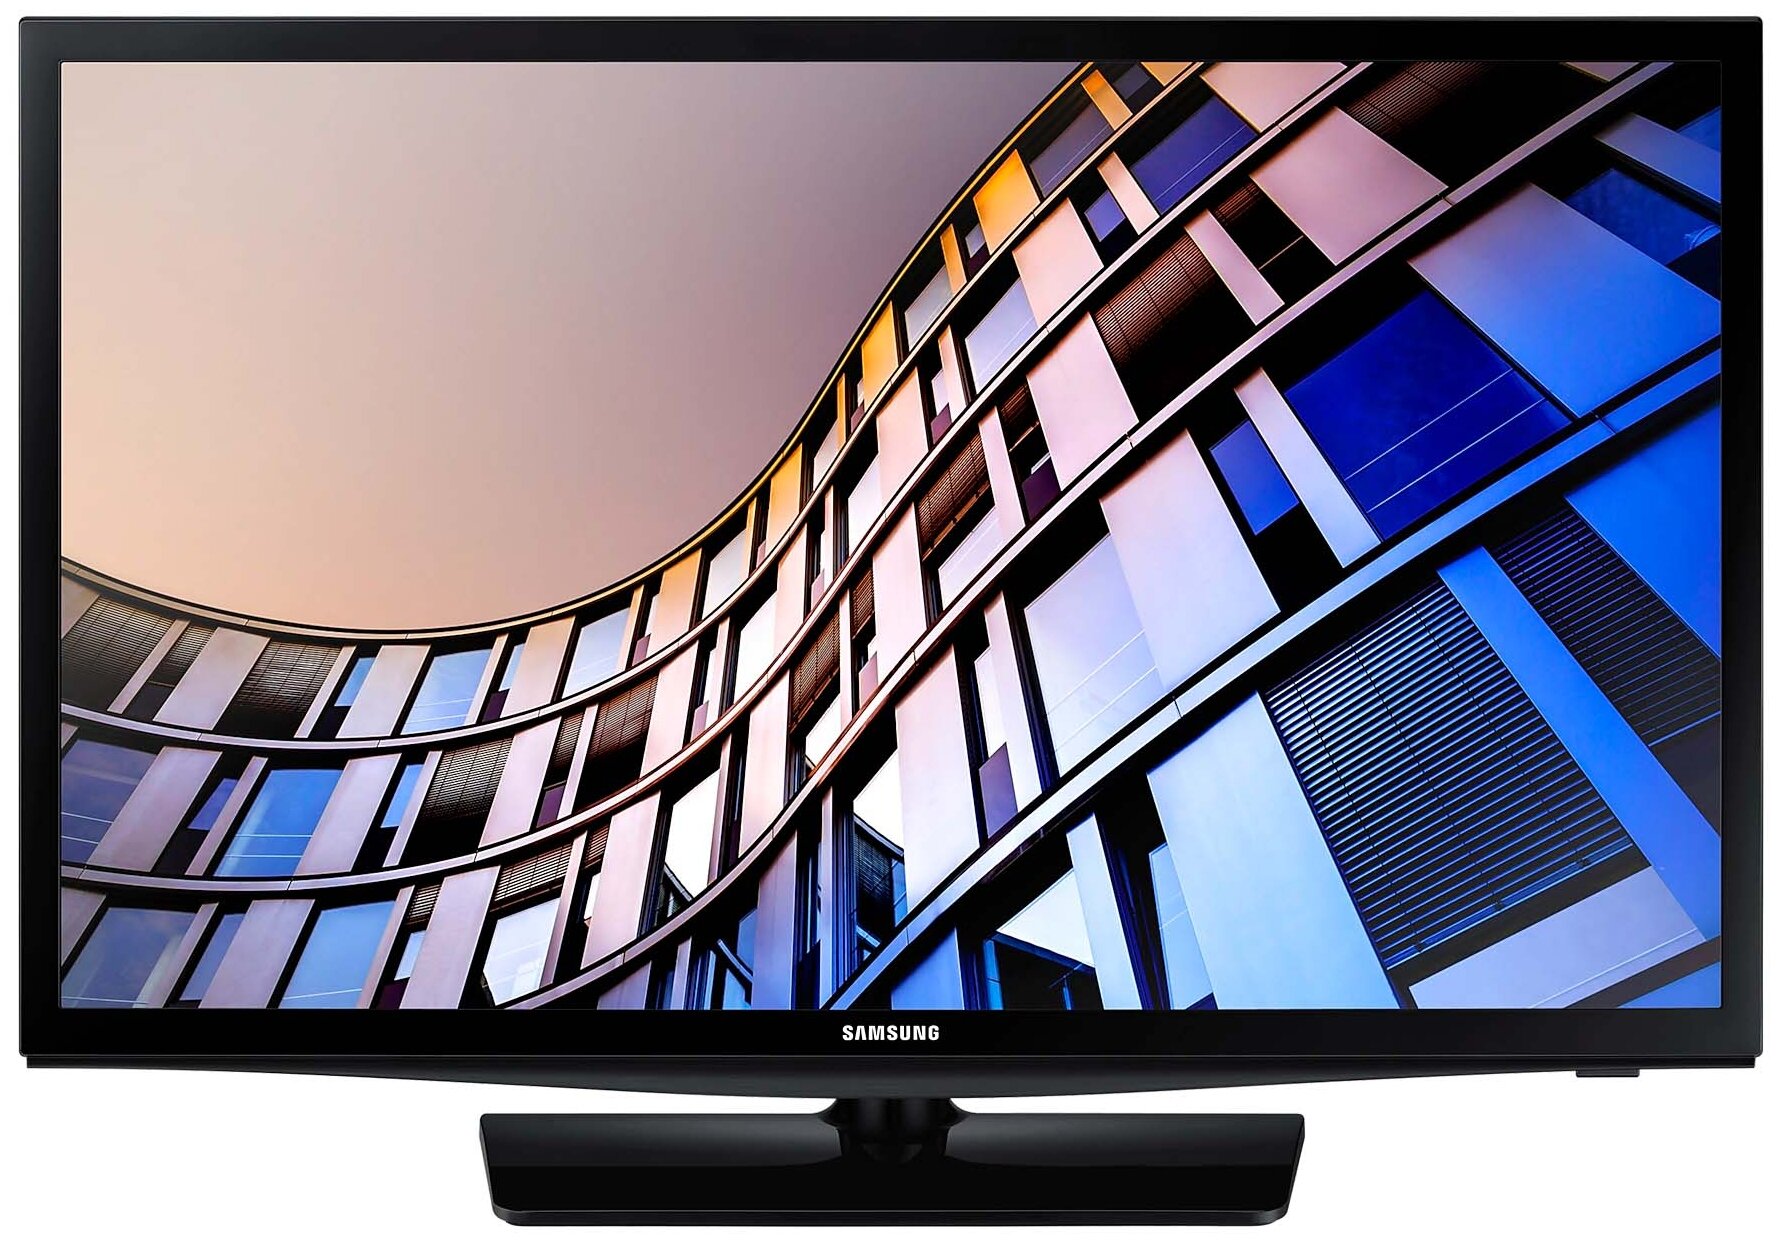 24" Телевизор Samsung UE24N4500AUXRU 2018 LED, черный глянцевый